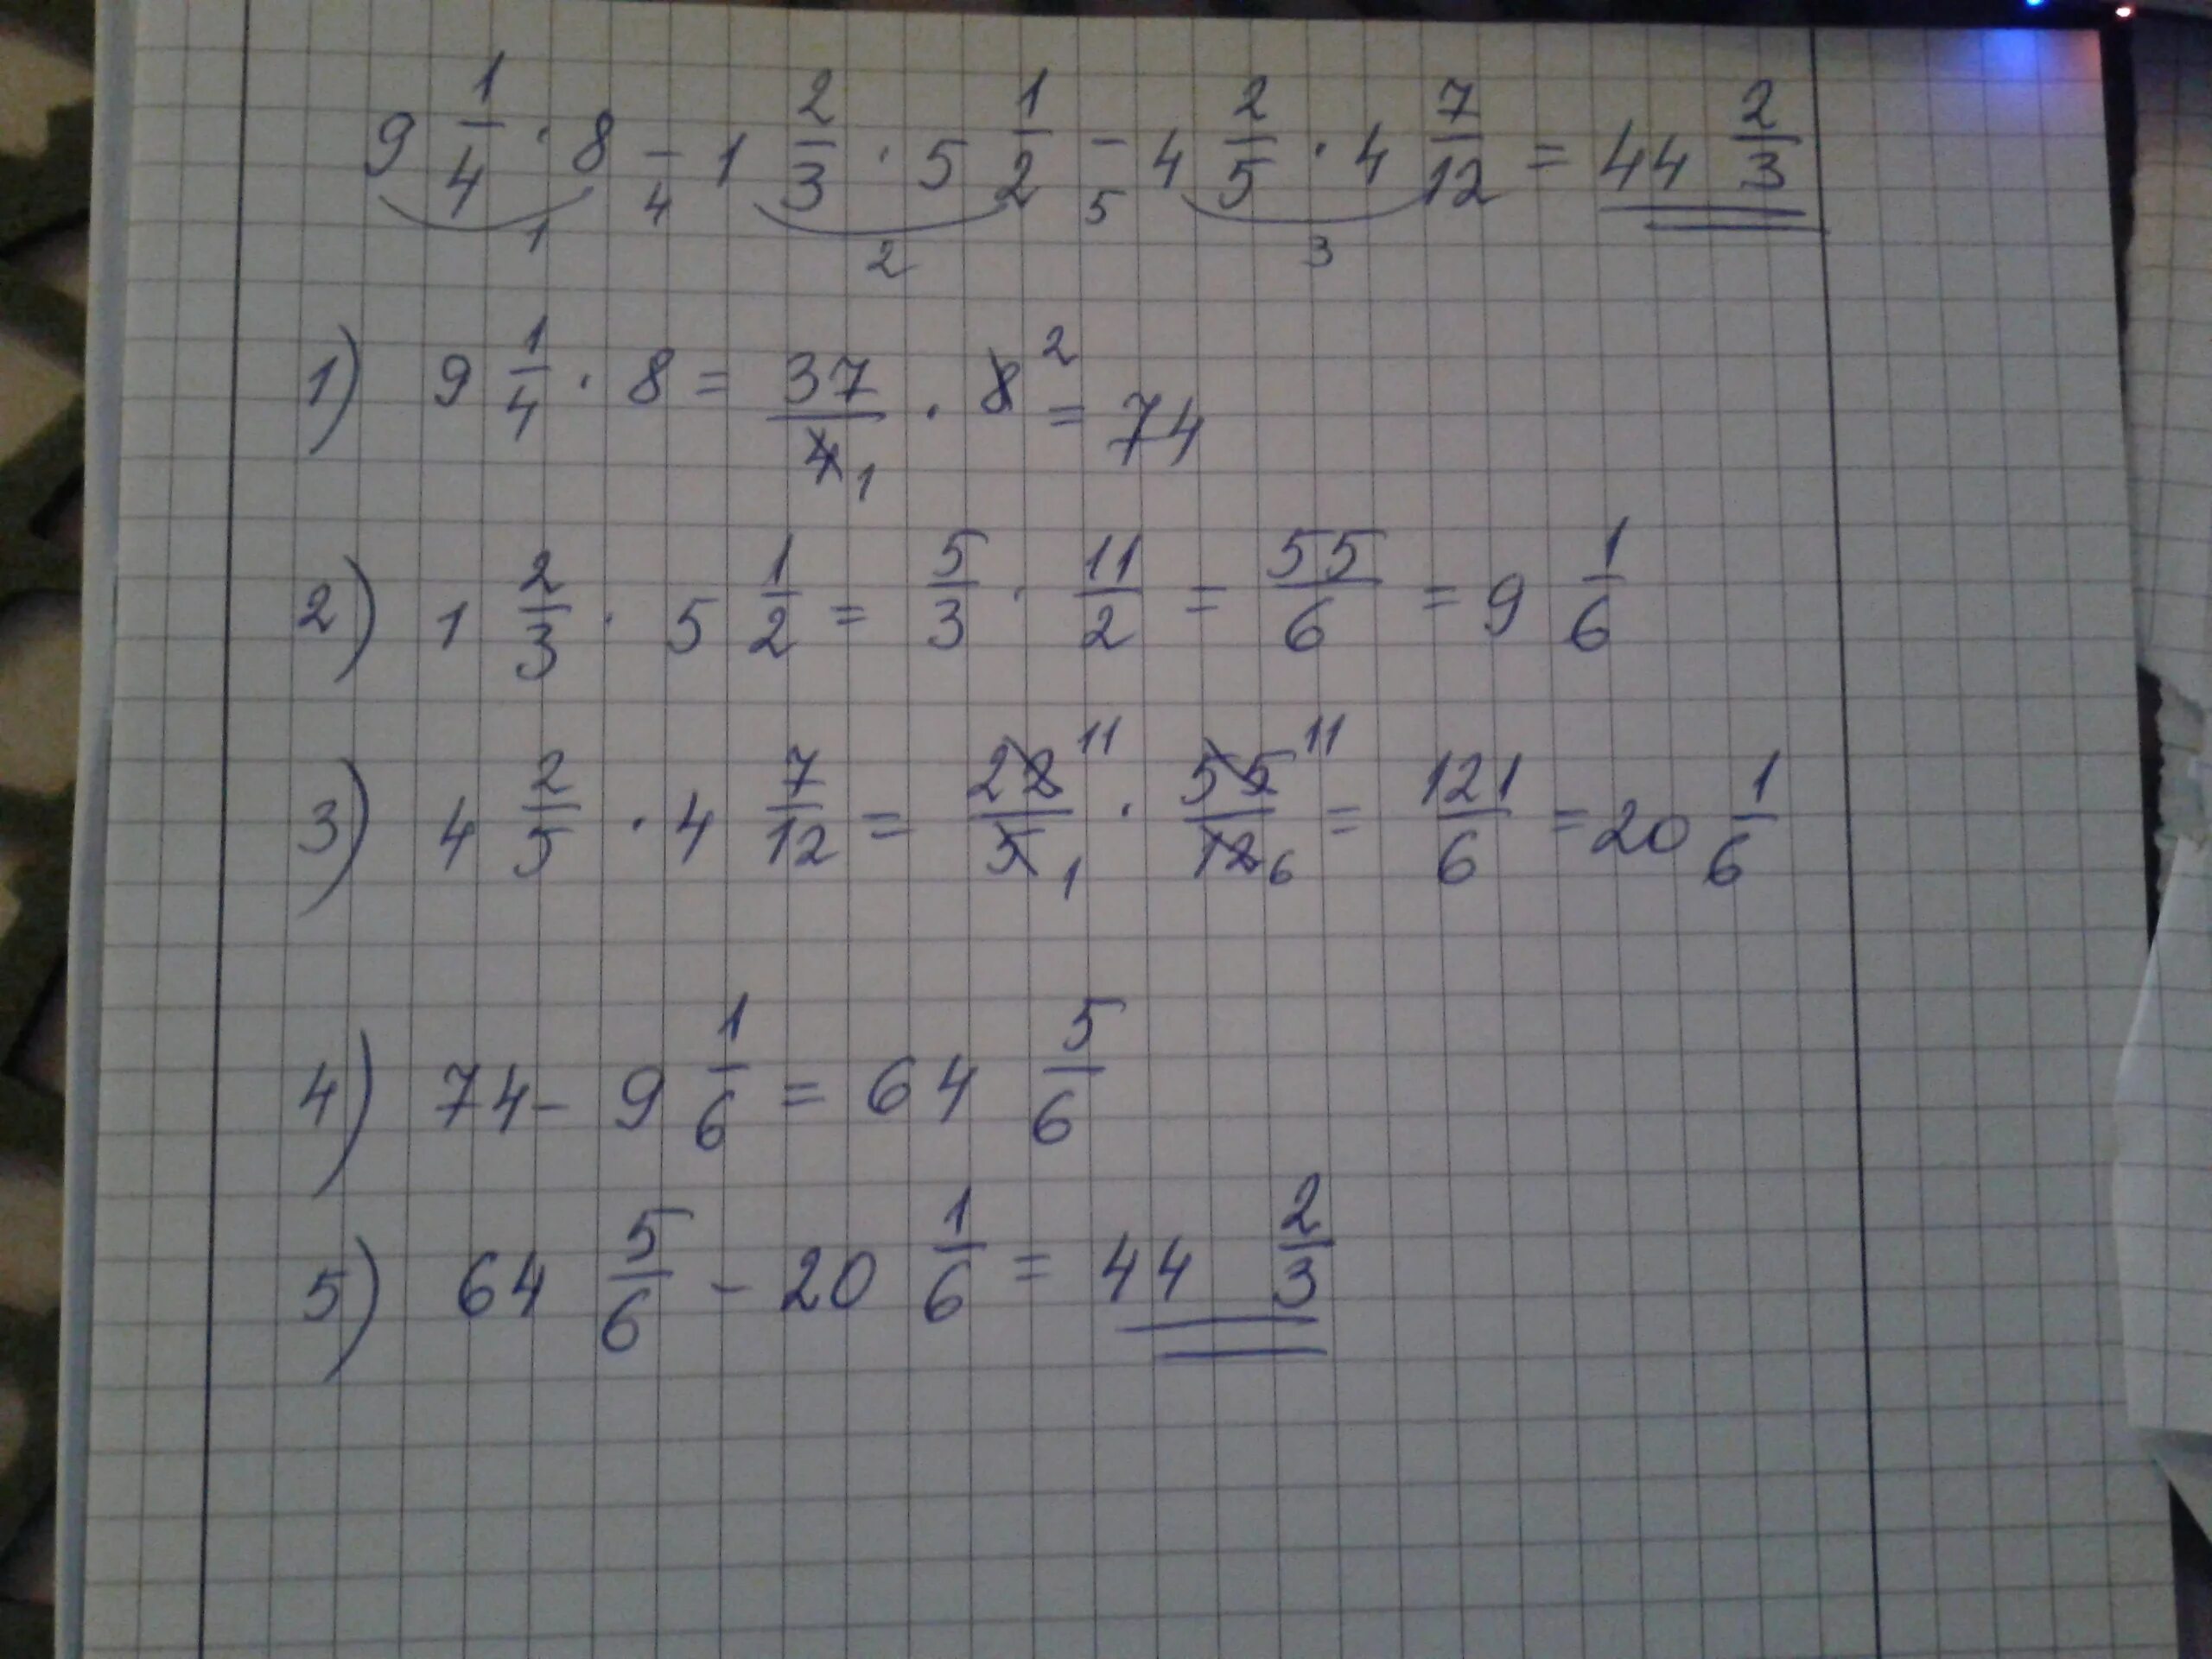 14 15 х 3 8. 1/2-1/4 Решение. Примеры на 8 и 9. 3 1 1 2 5 1 1 4 Решите. Пример 5-1=4.